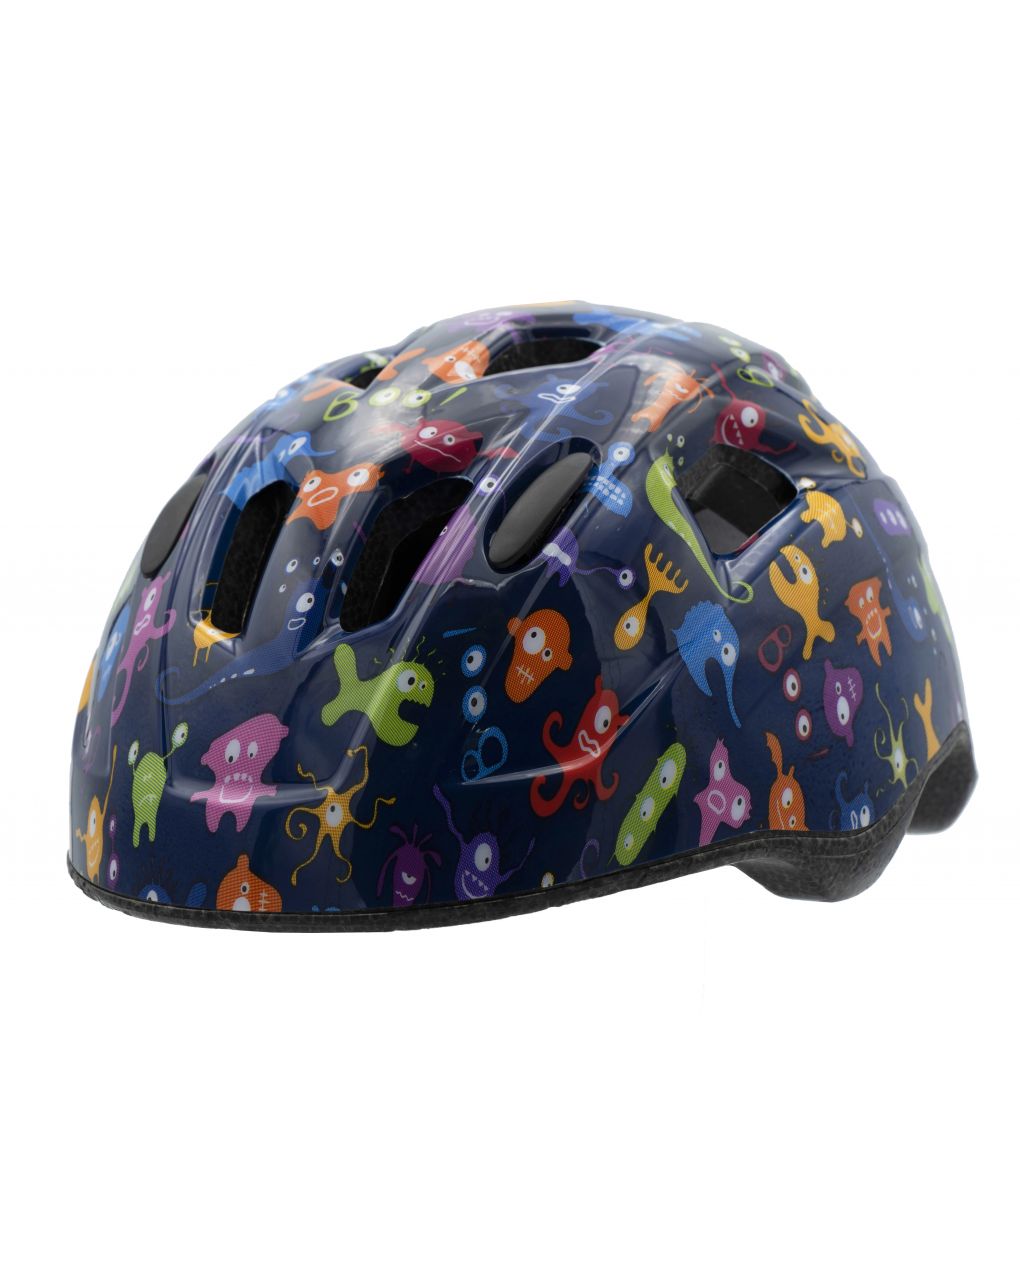 Little monster - casco de bicicleta para niños - Bellelli